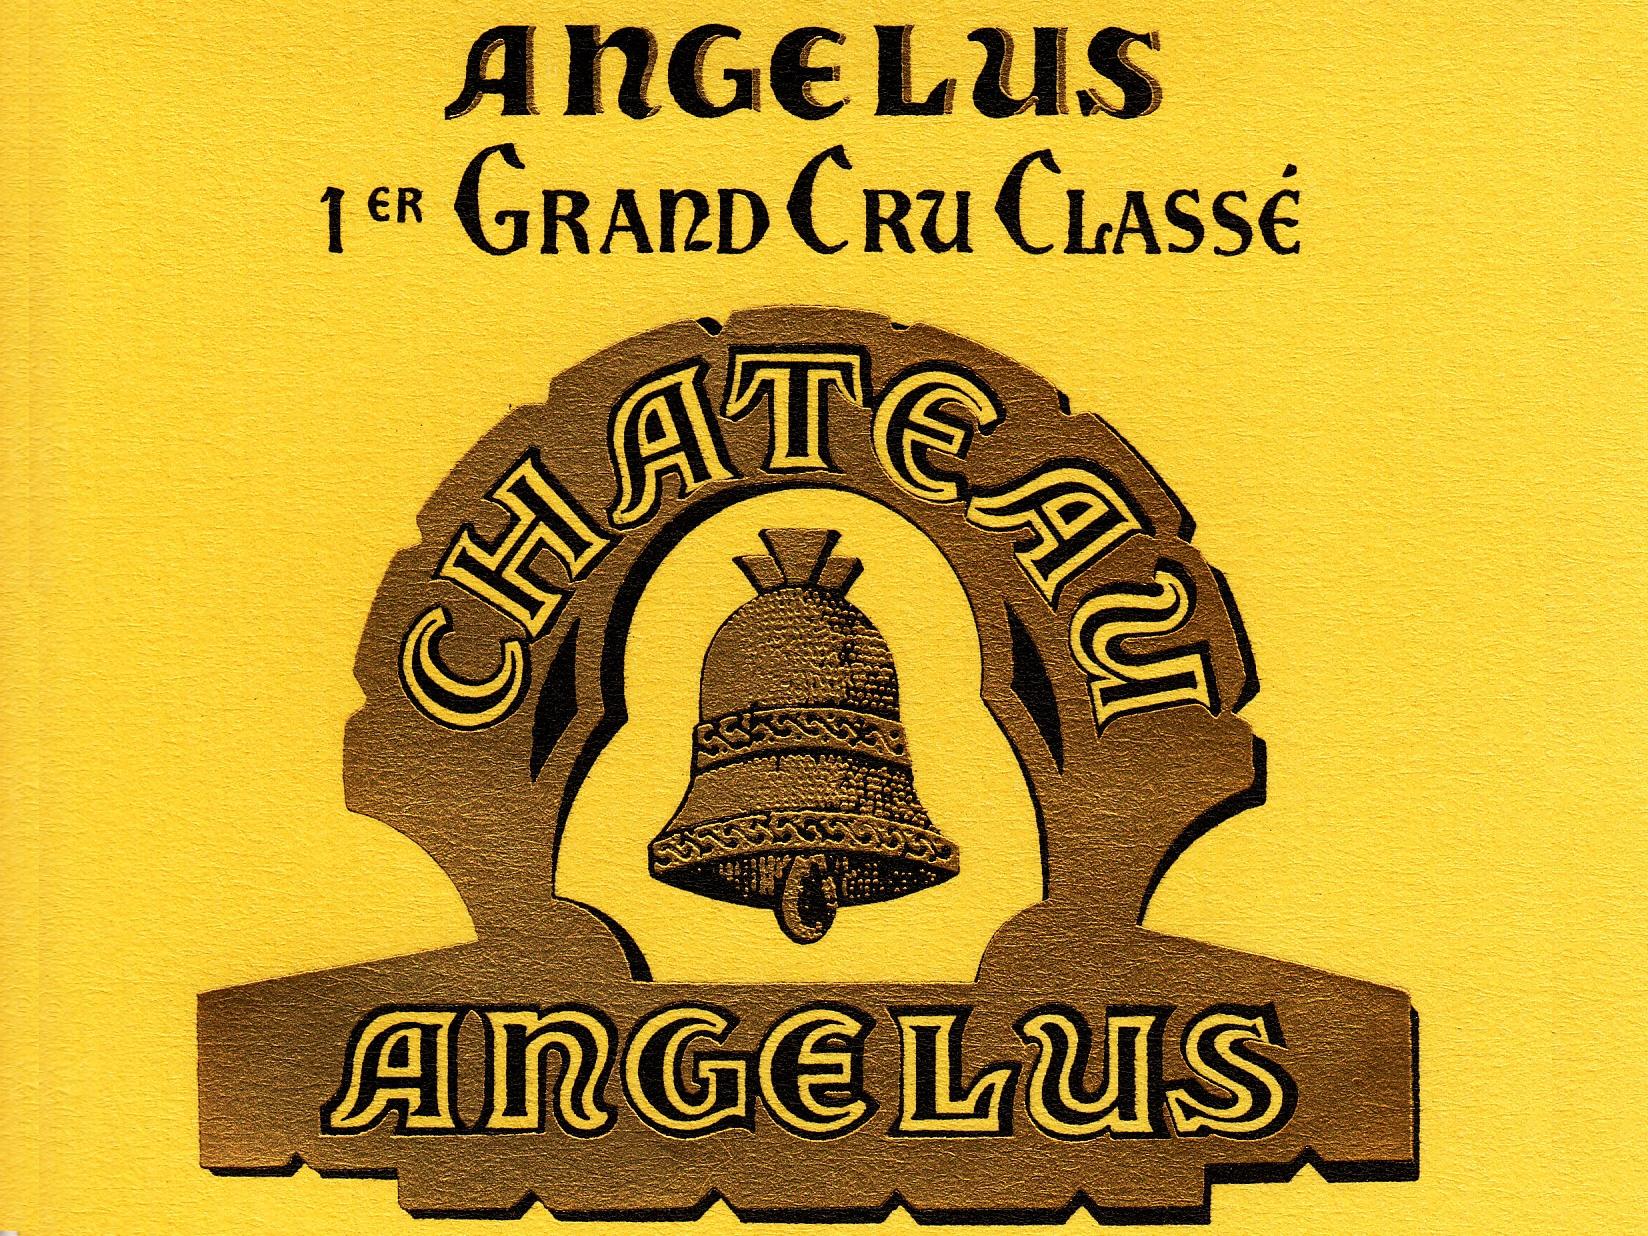  Château Angélus